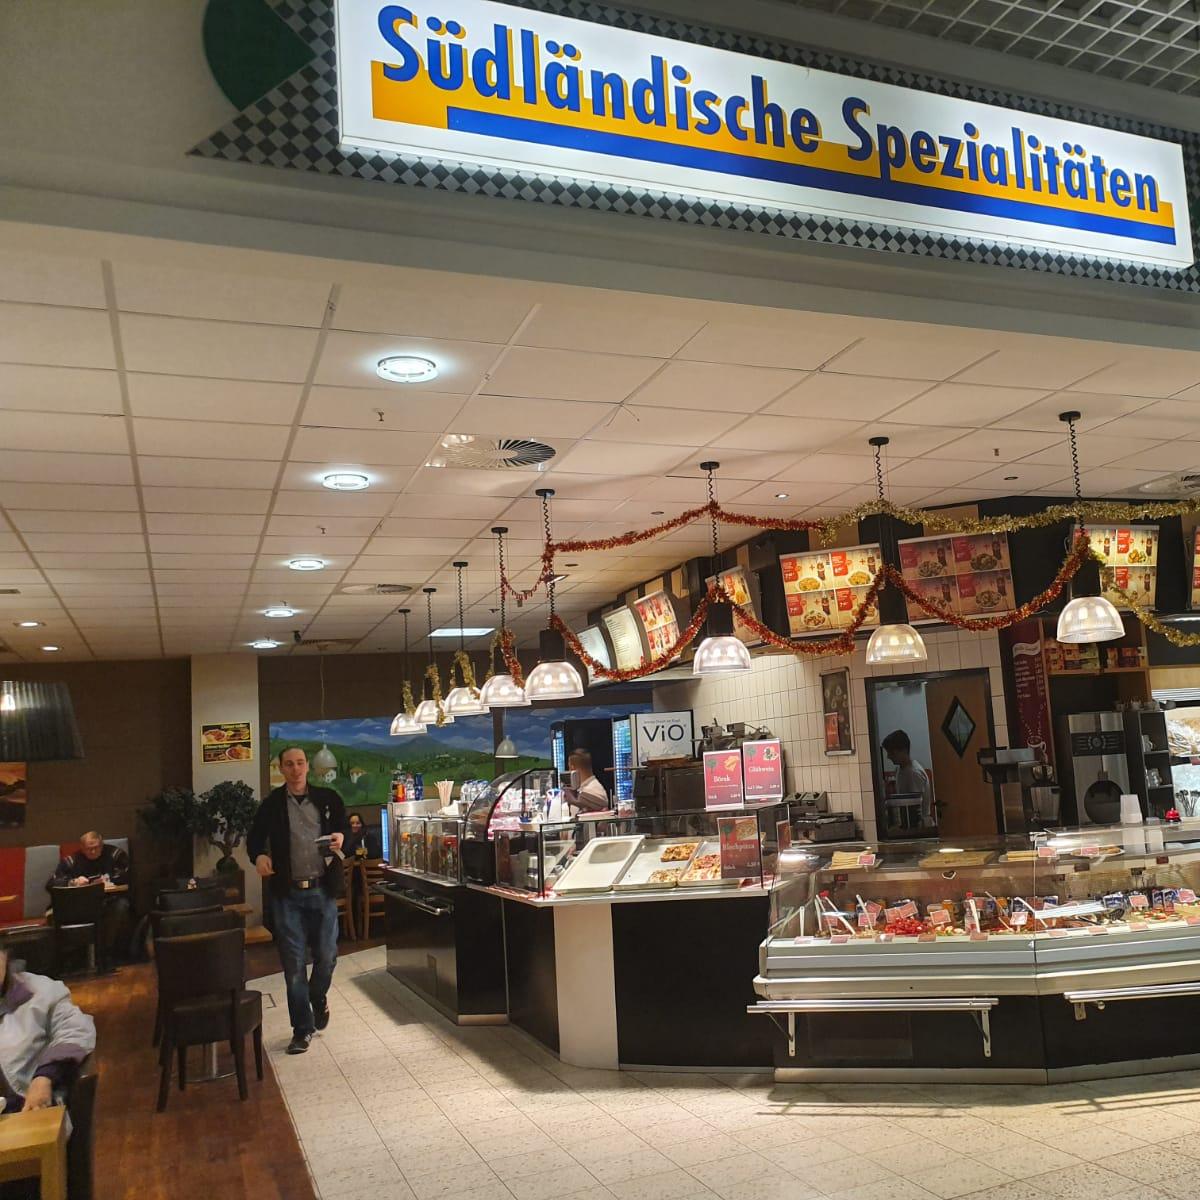 Restaurant "Mediterrano Südländische Spezialitäten" in Prisdorf